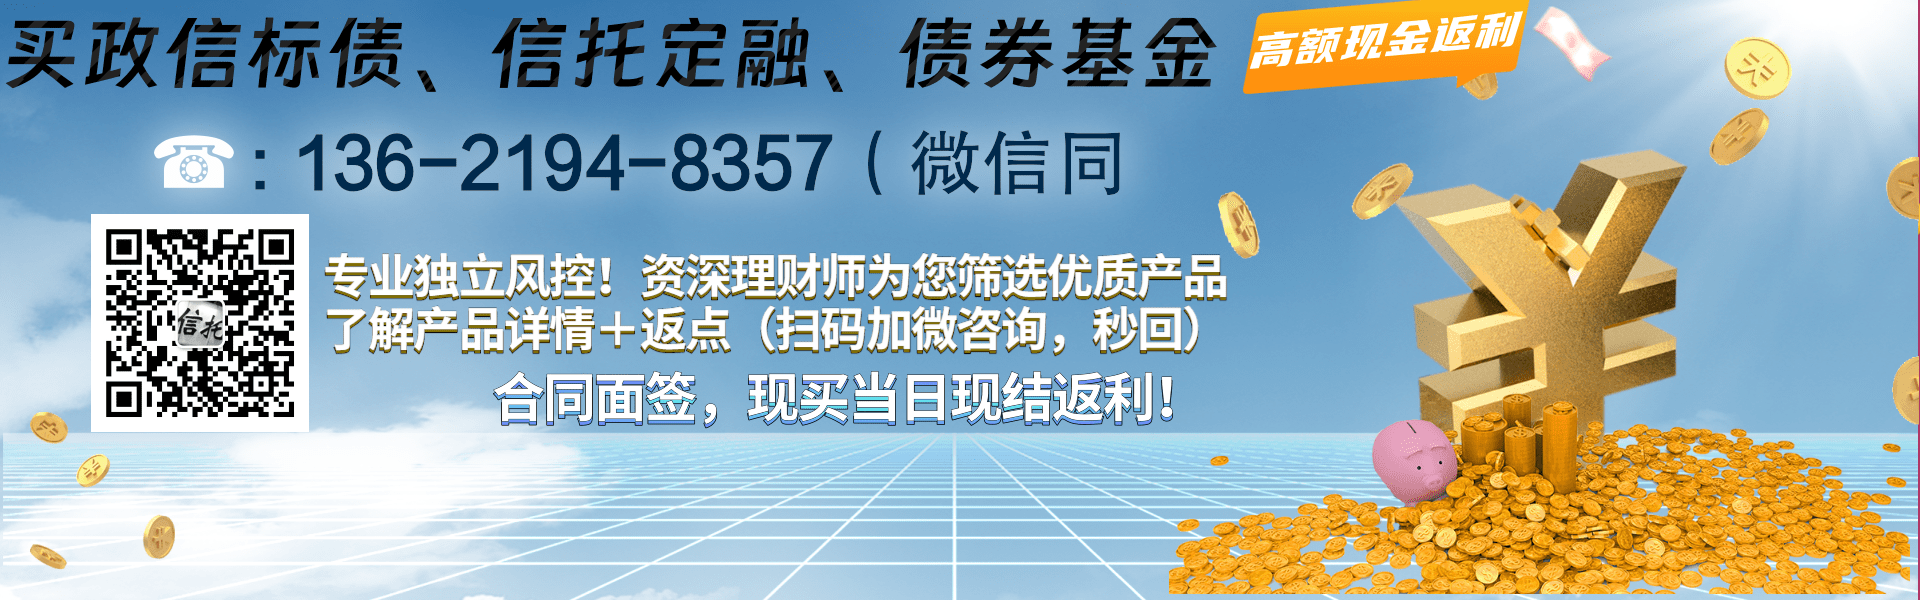 大业信托-9号江苏扬州仪征非标集合信托计划